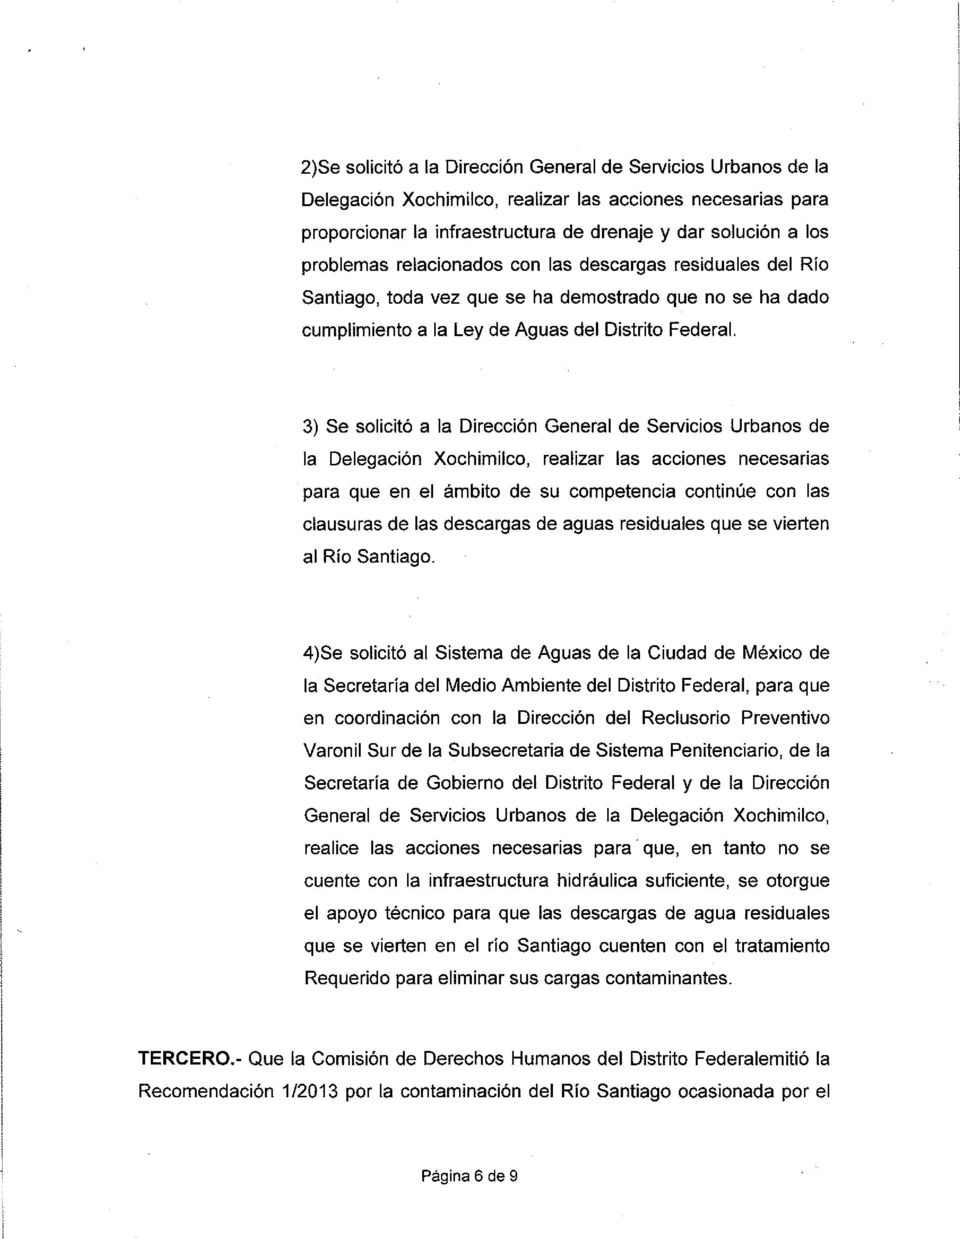 3) Se solicitó a la Dirección General de Servicios Urbanos de la Delegación Xochimilco, realizar las acciones necesarias para que en el ámbito de su competencia continúe con las clausuras de las